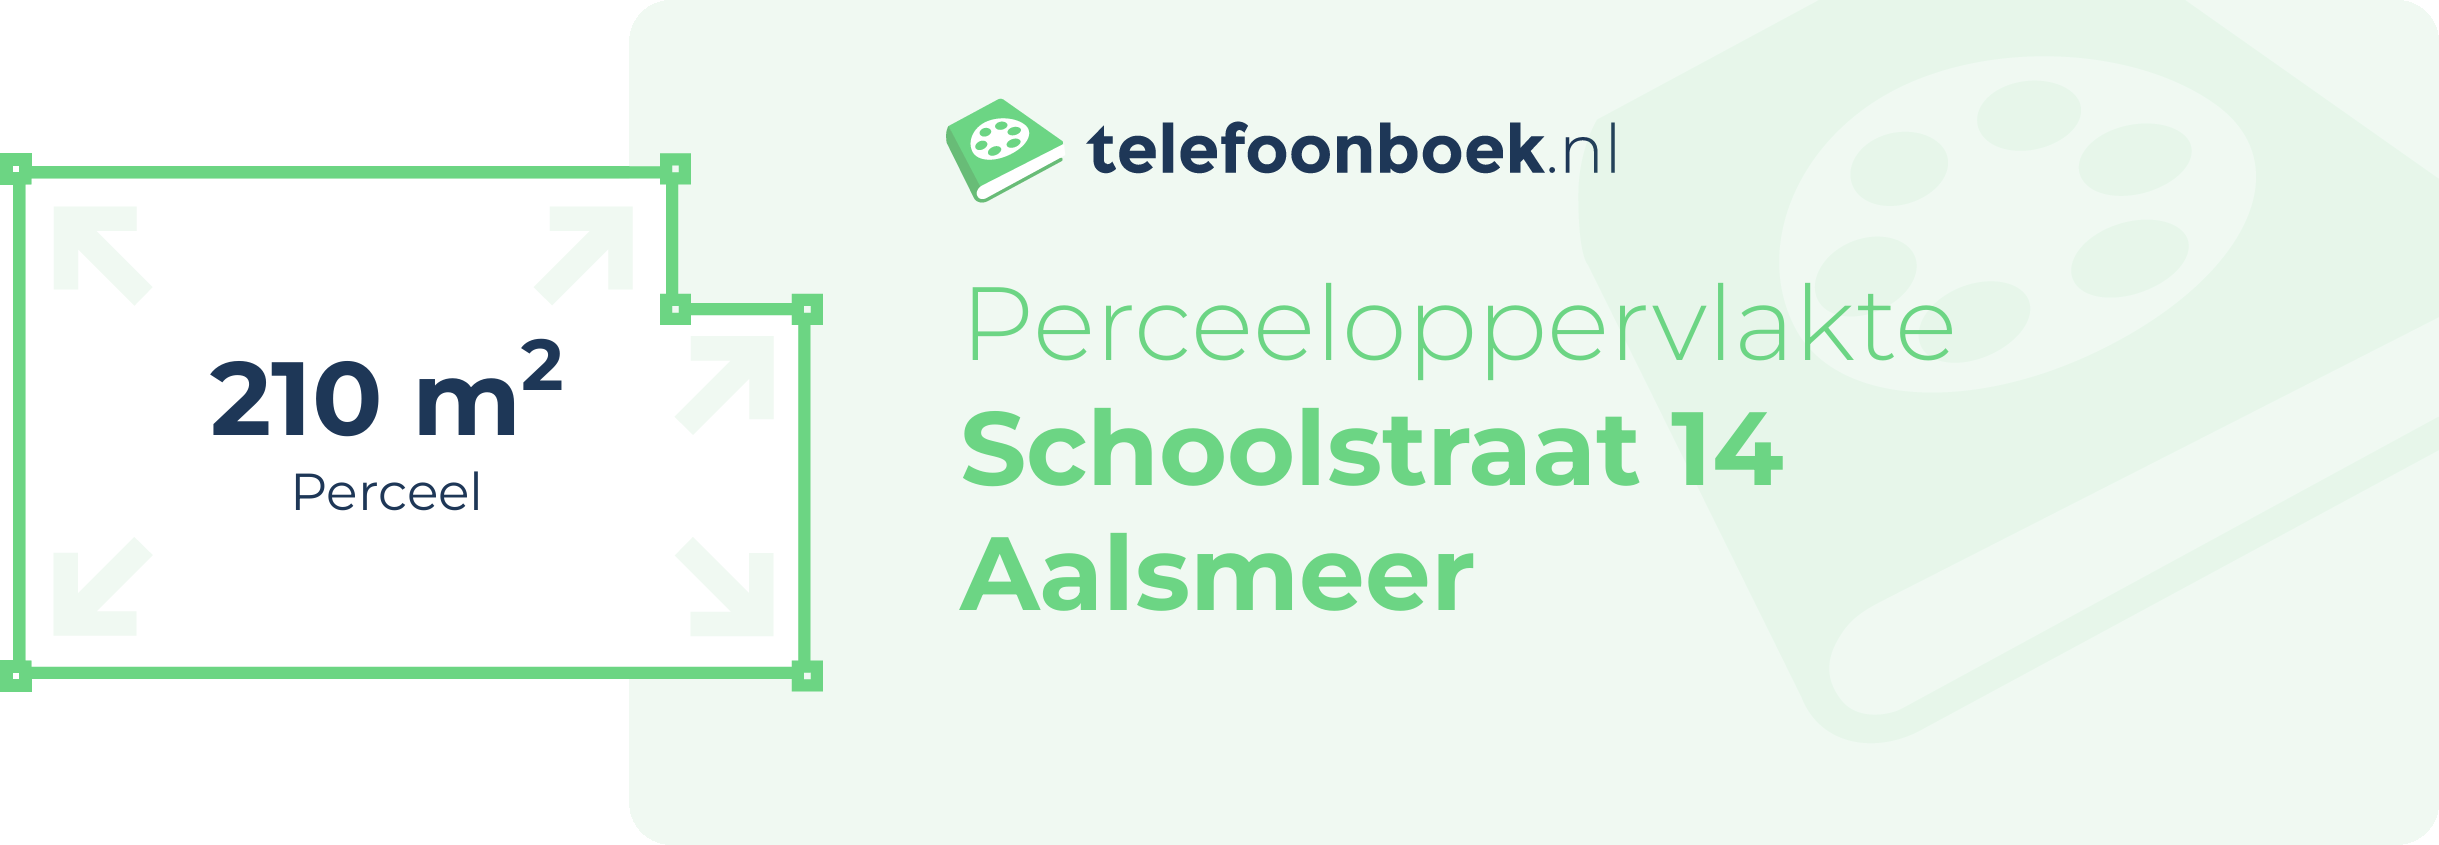 Perceeloppervlakte Schoolstraat 14 Aalsmeer